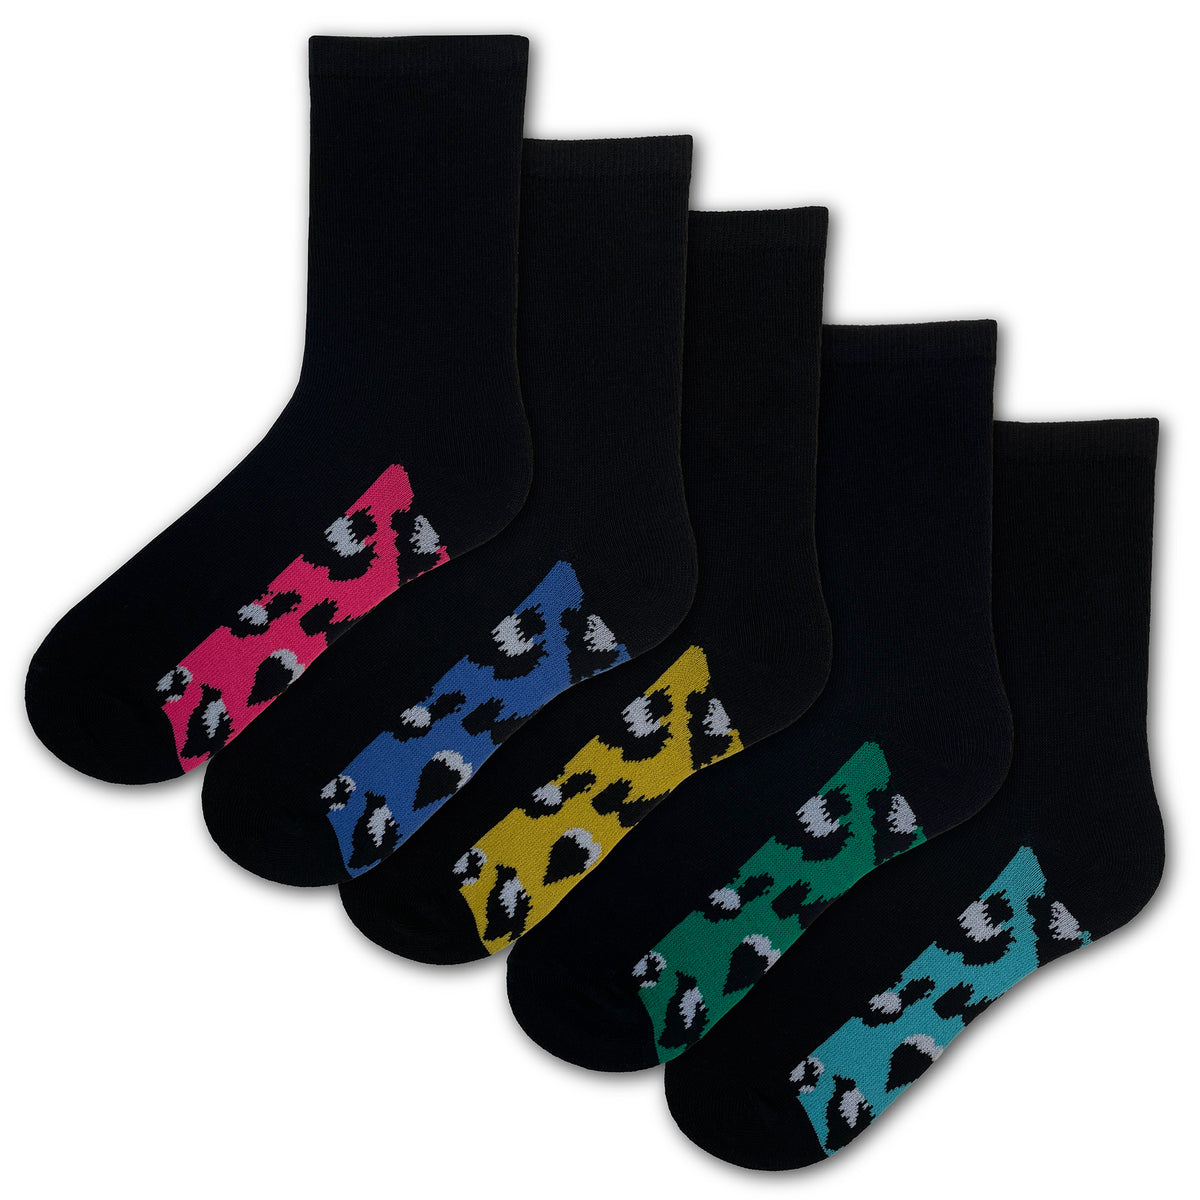 Animal Footbed - Multi Socks 5 Pack 